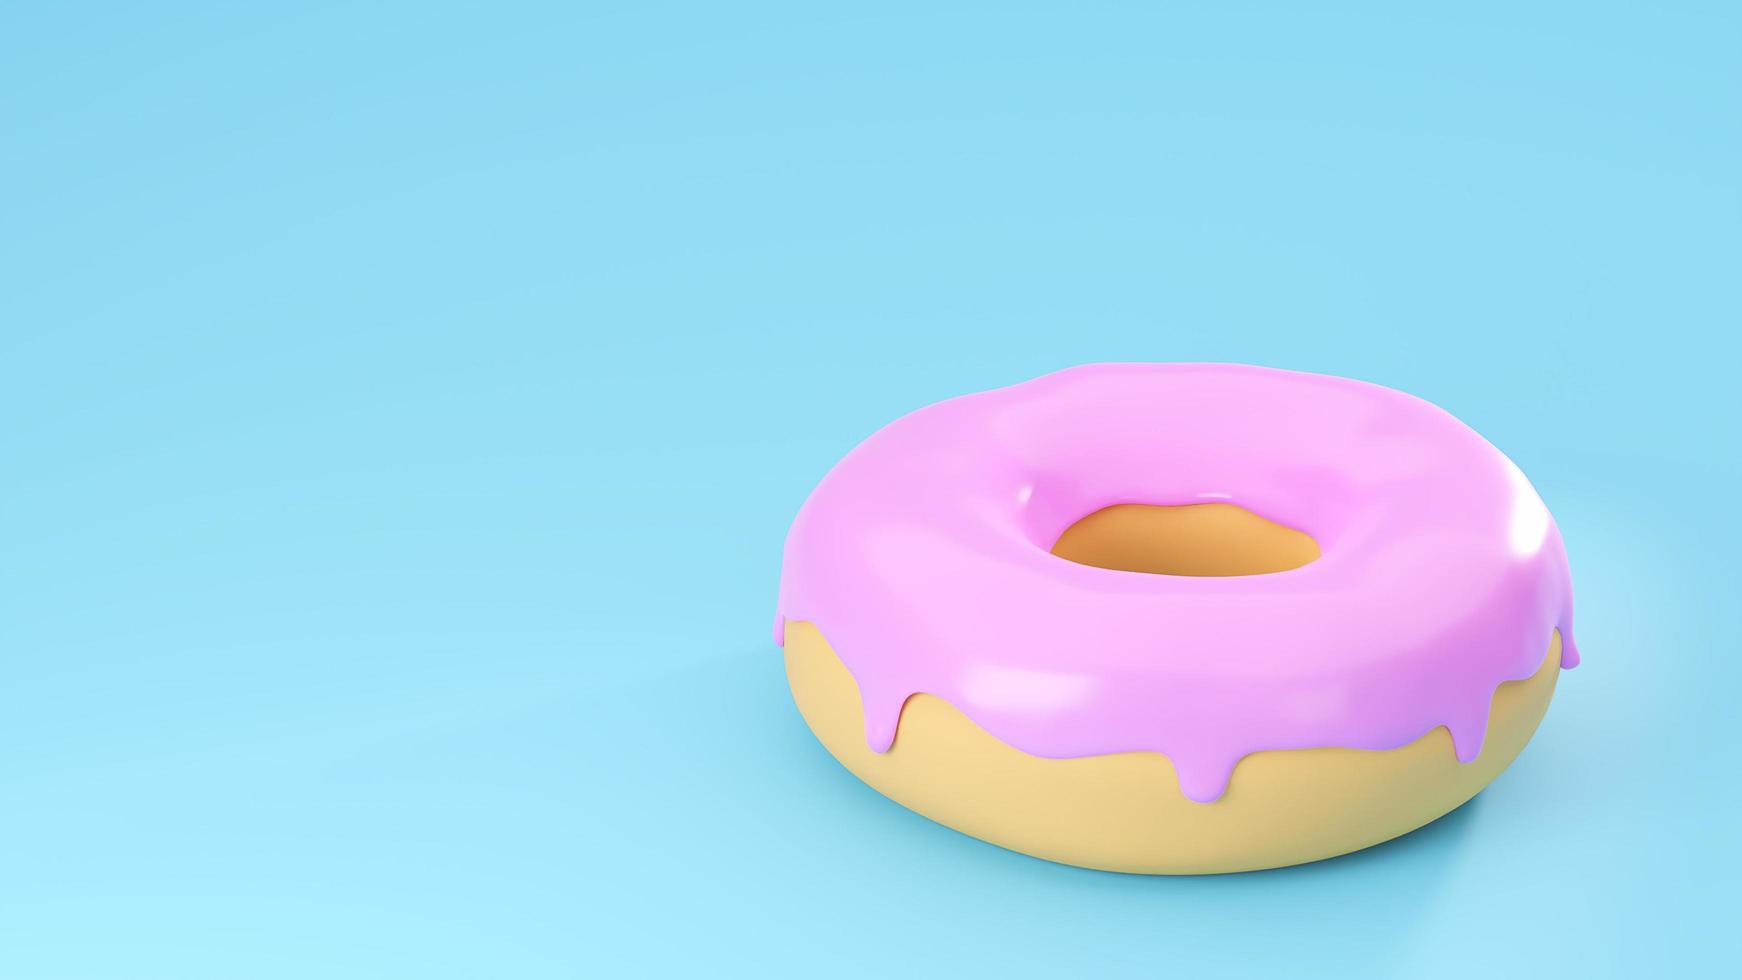 Deliciosa rosquilla colorida con glaseado rosa glaseado sobre un fondo azul pastel con espacio de copia. Ilustración de render 3d. foto